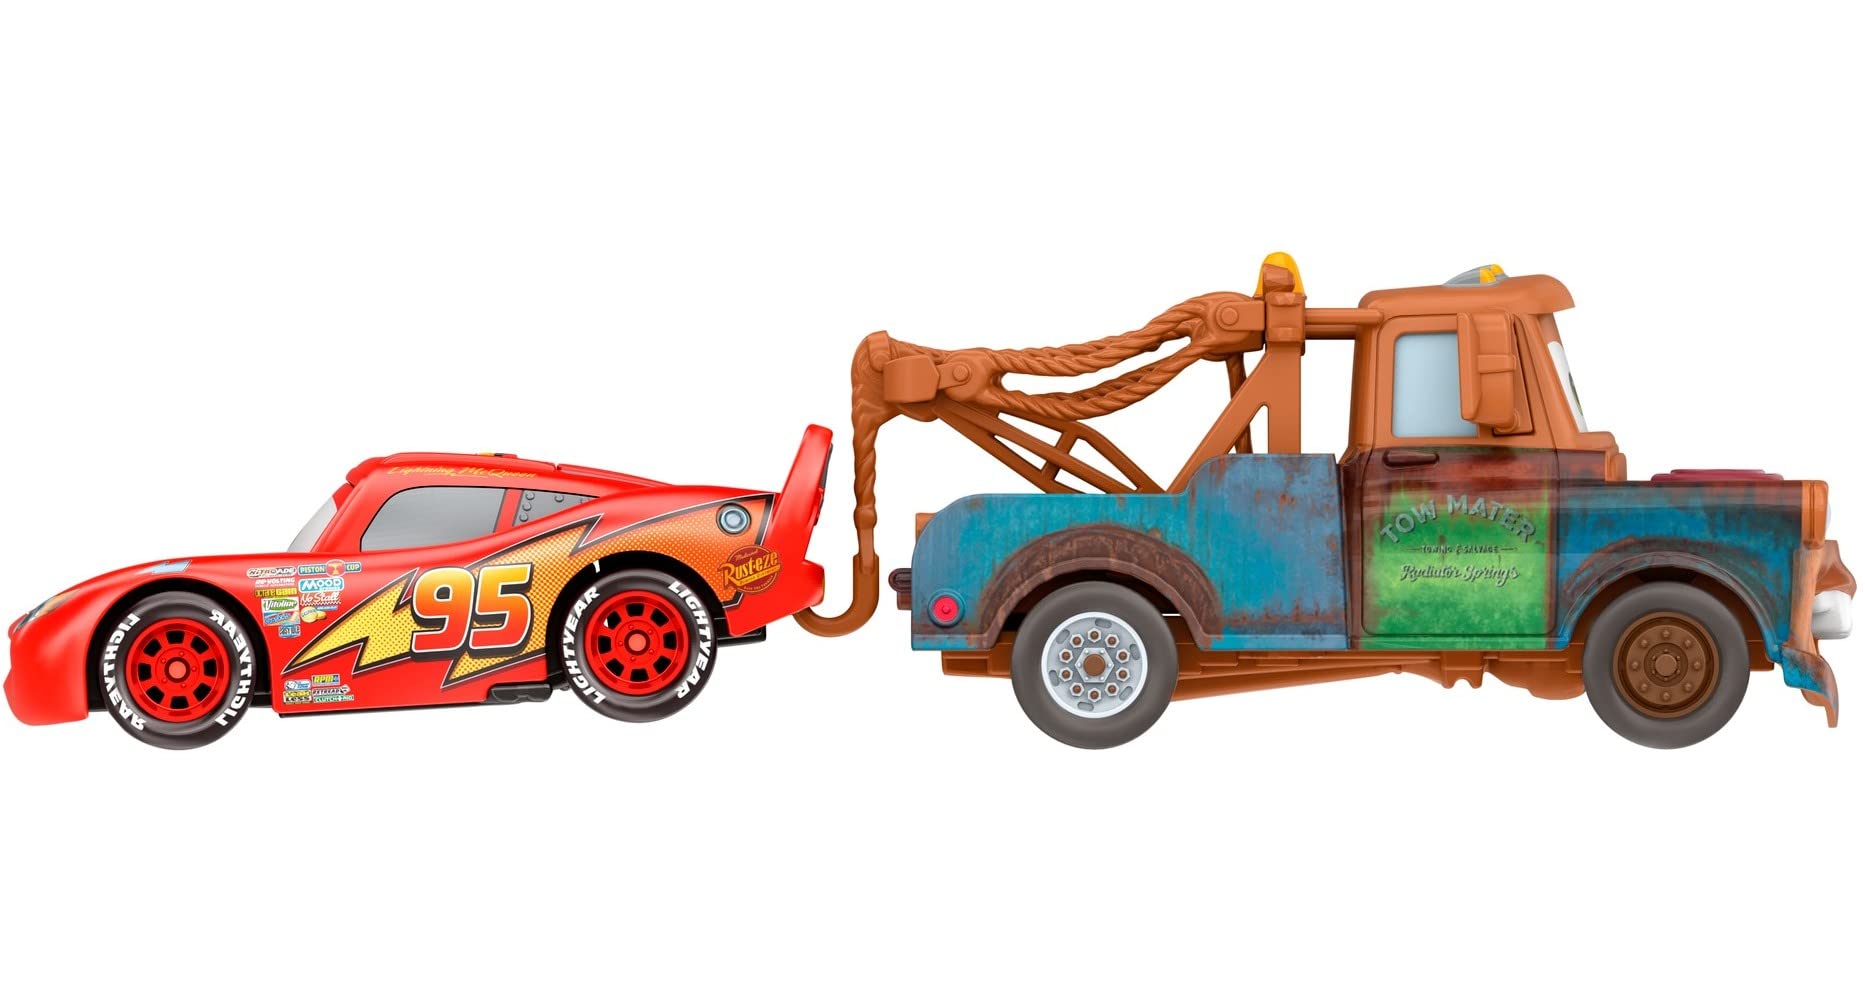 Disney Cars Toys y Pixar Cars 3, Mater & Lightning McQueen Paquete de 2,  vehículos de personajes favoritos de los fanáticos fundidos a escala 1:55